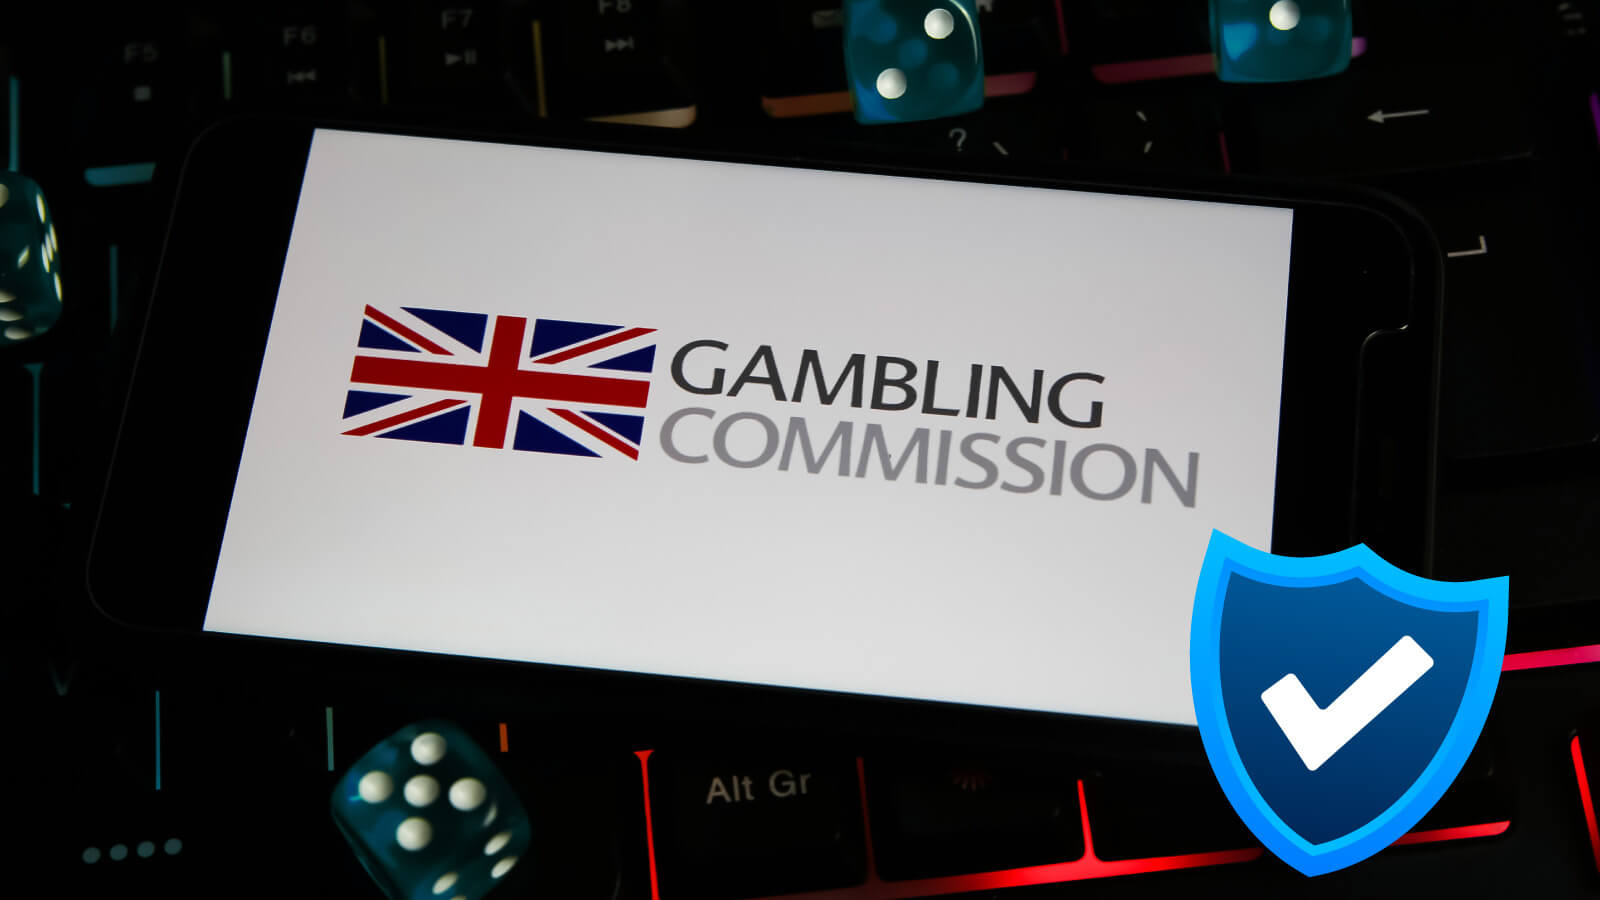 How UKGC Ensures Fair and Responsible Gambling